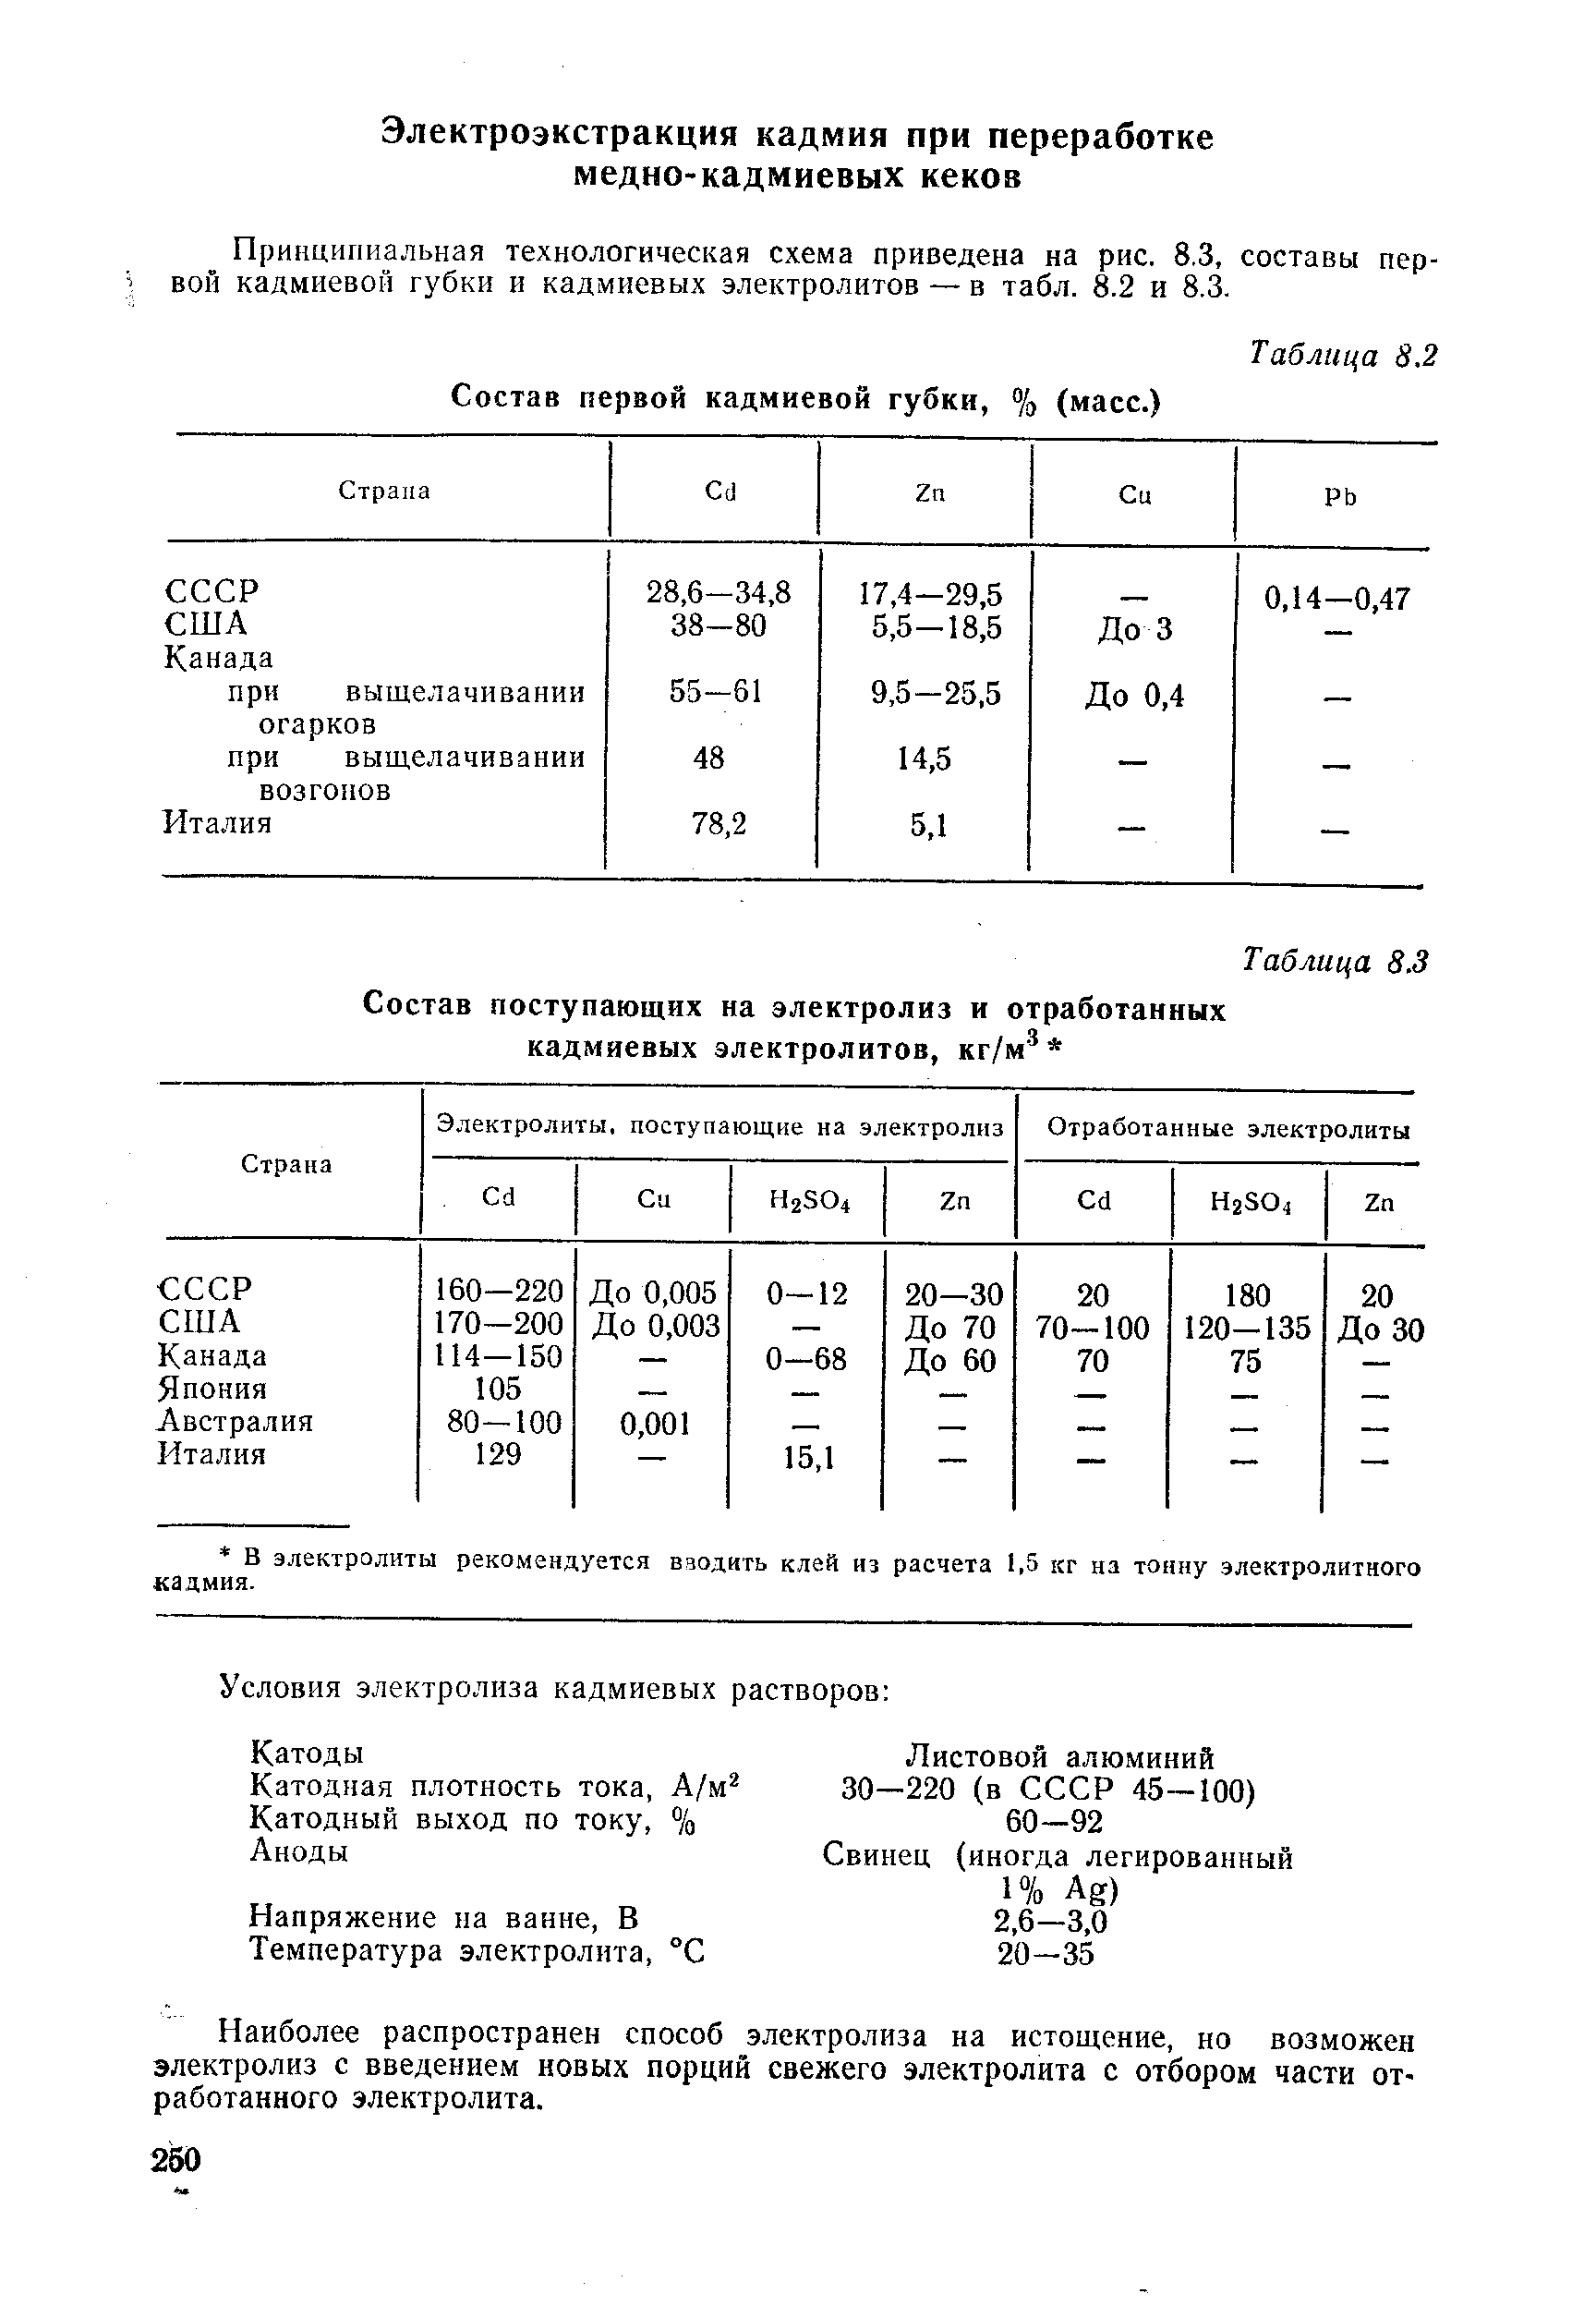 Принципиальная технологическая схема приведена на рис. 8.3, составы первой кадмиевой губки и кадмиевых электролитов — в табл. 8.2 и 8.3.